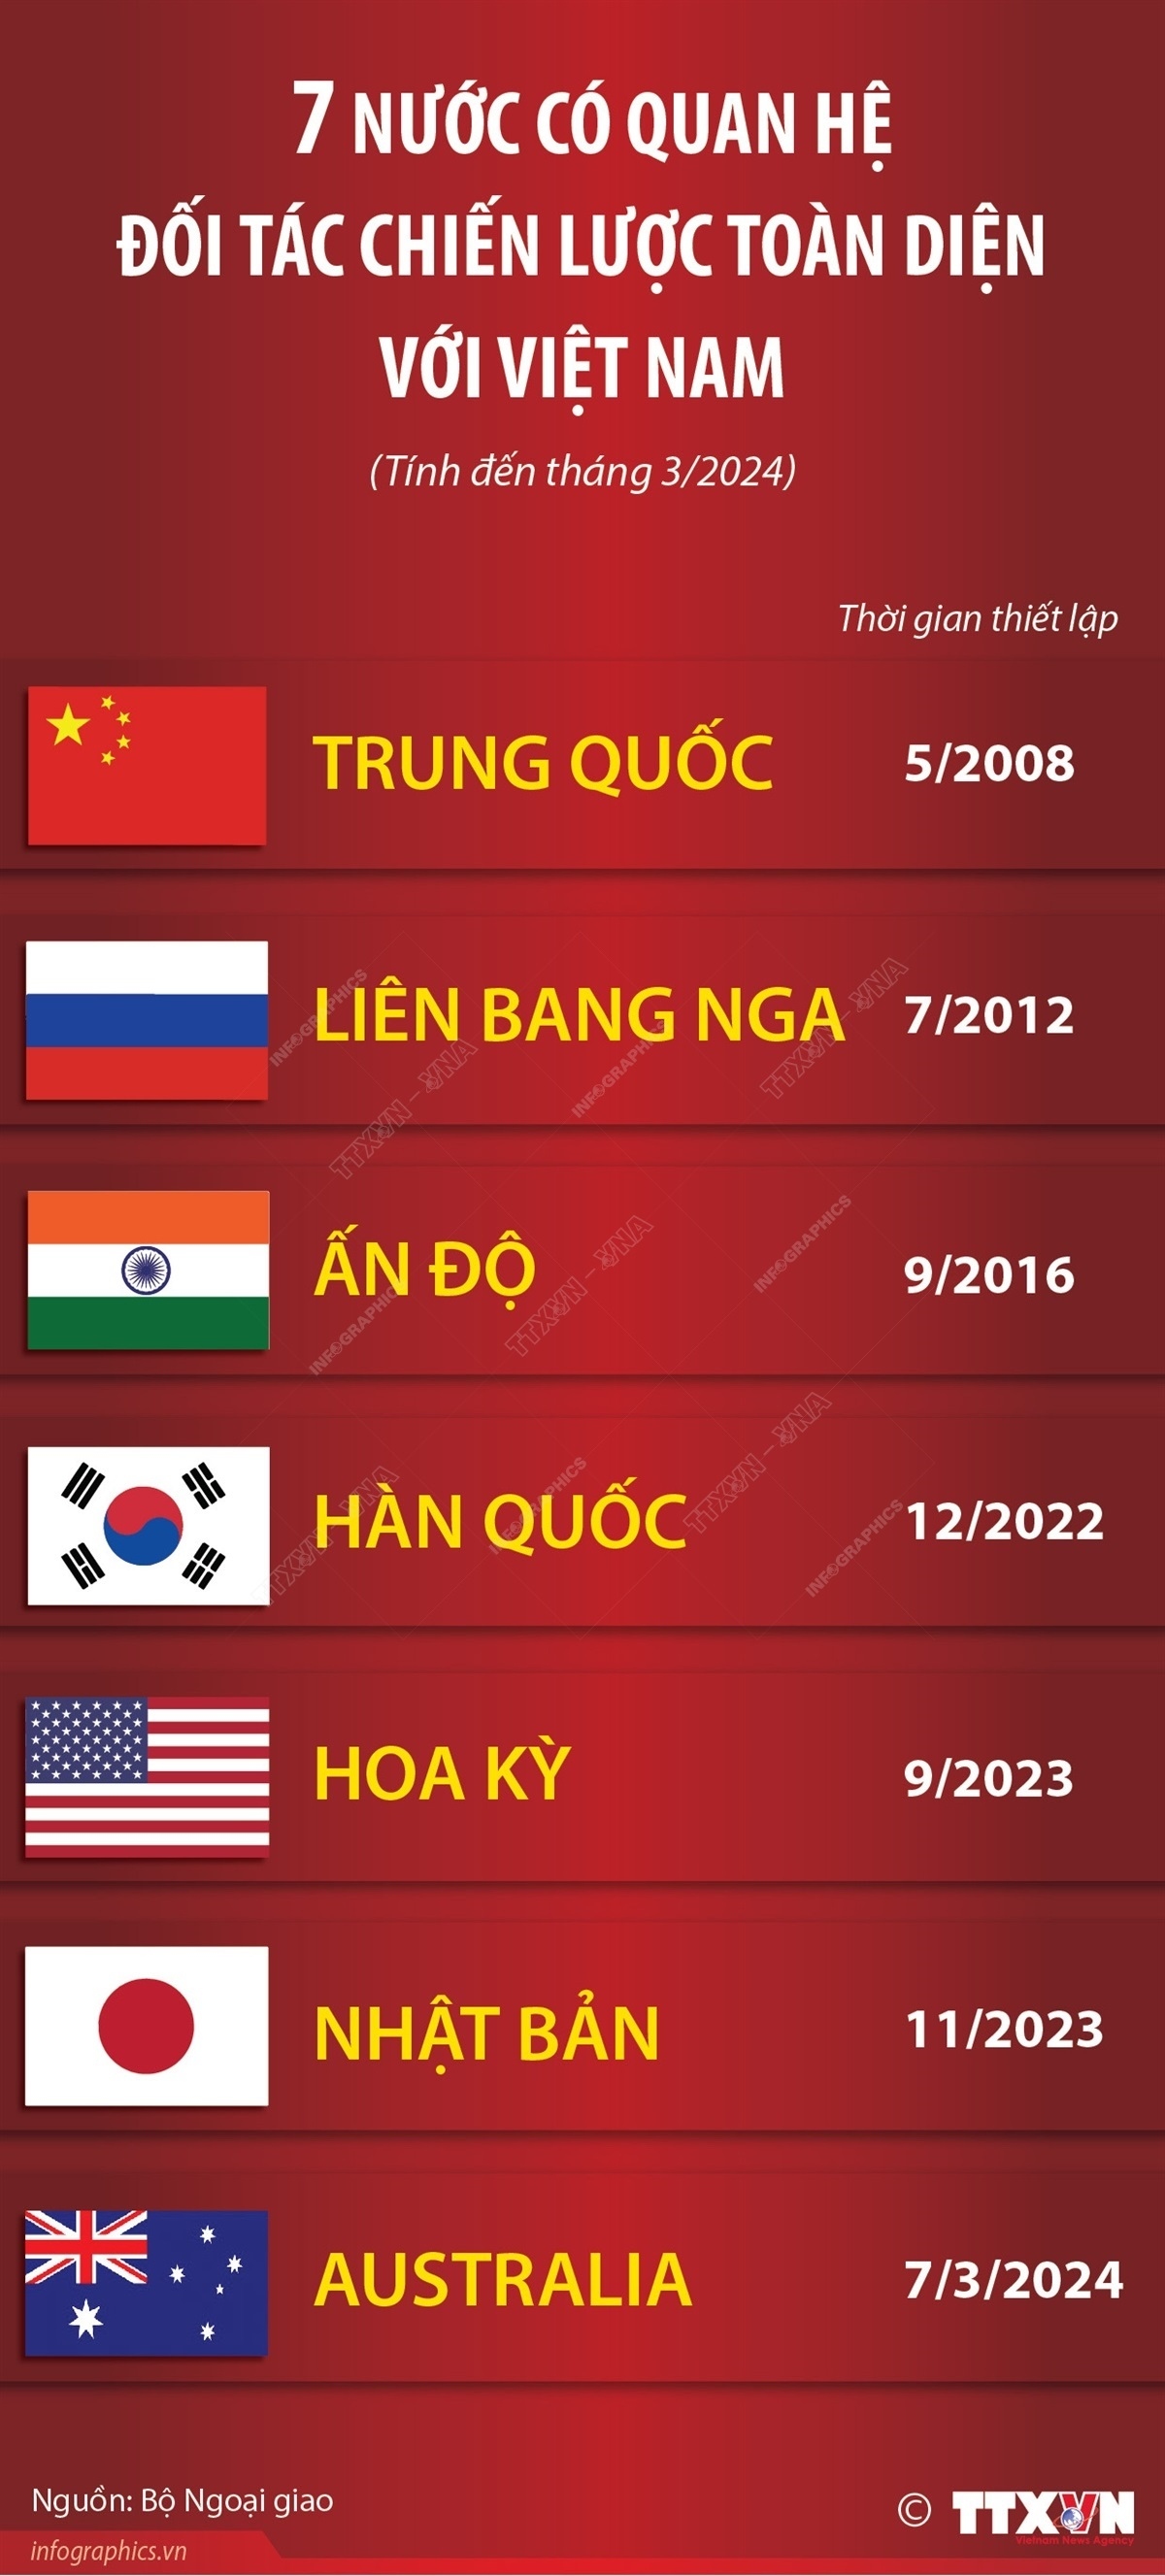 Bảy nước có quan hệ Đối tác chiến lược toàn diện với Việt Nam